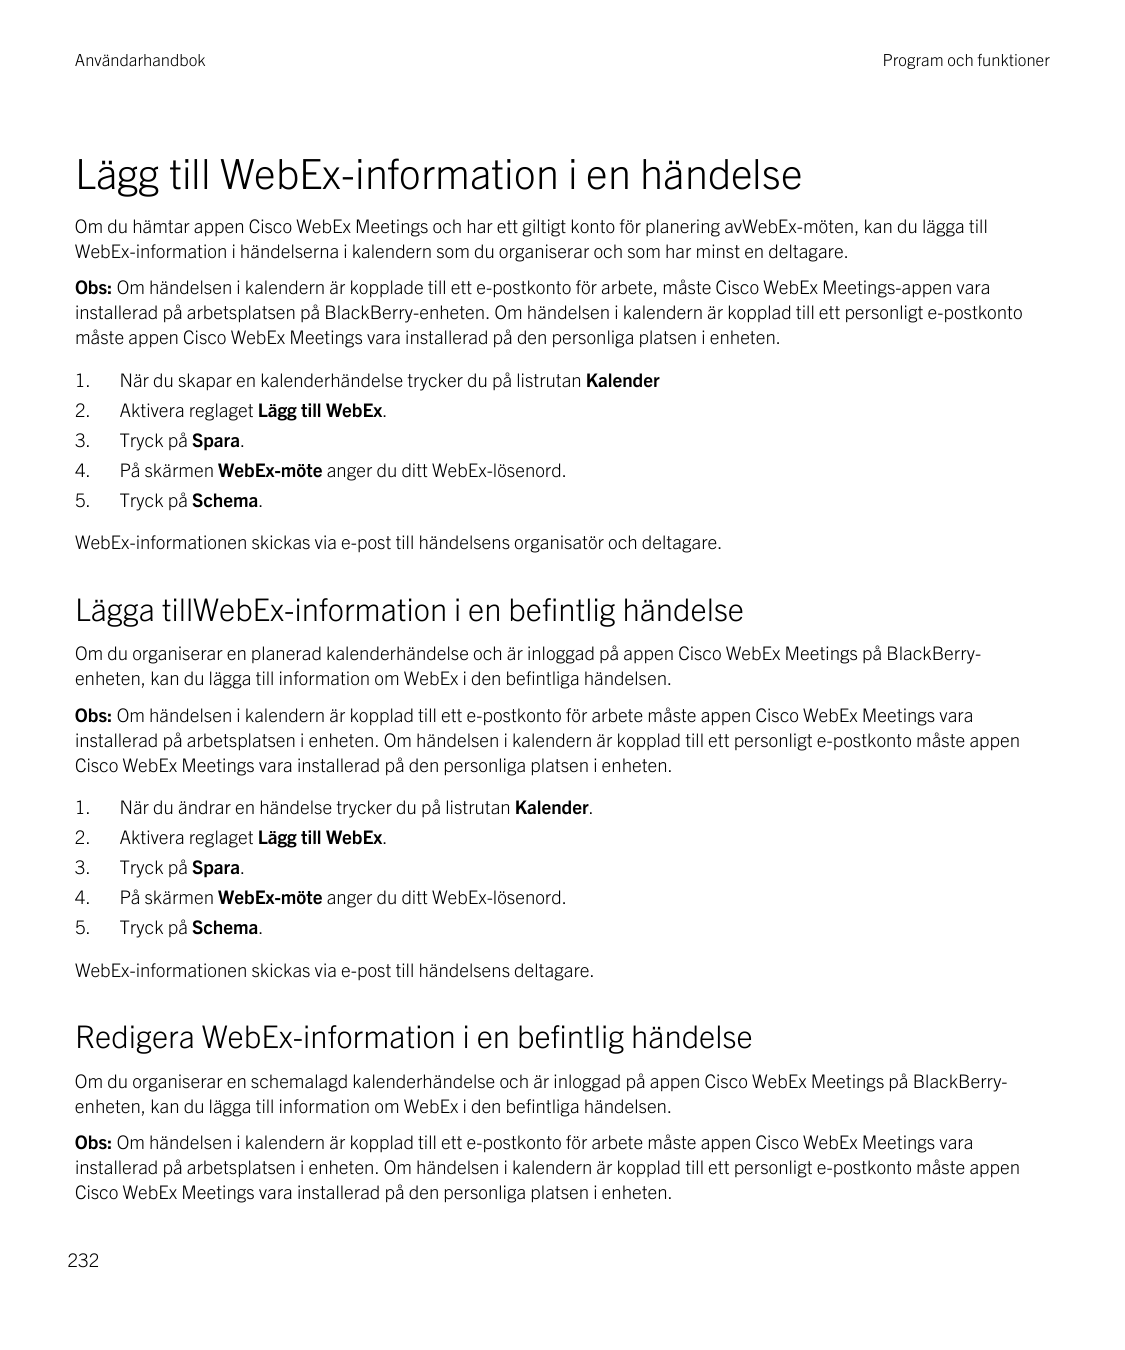 AnvändarhandbokProgram och funktionerLägg till WebEx-information i en händelseOm du hämtar appen Cisco WebEx Meetings och har et